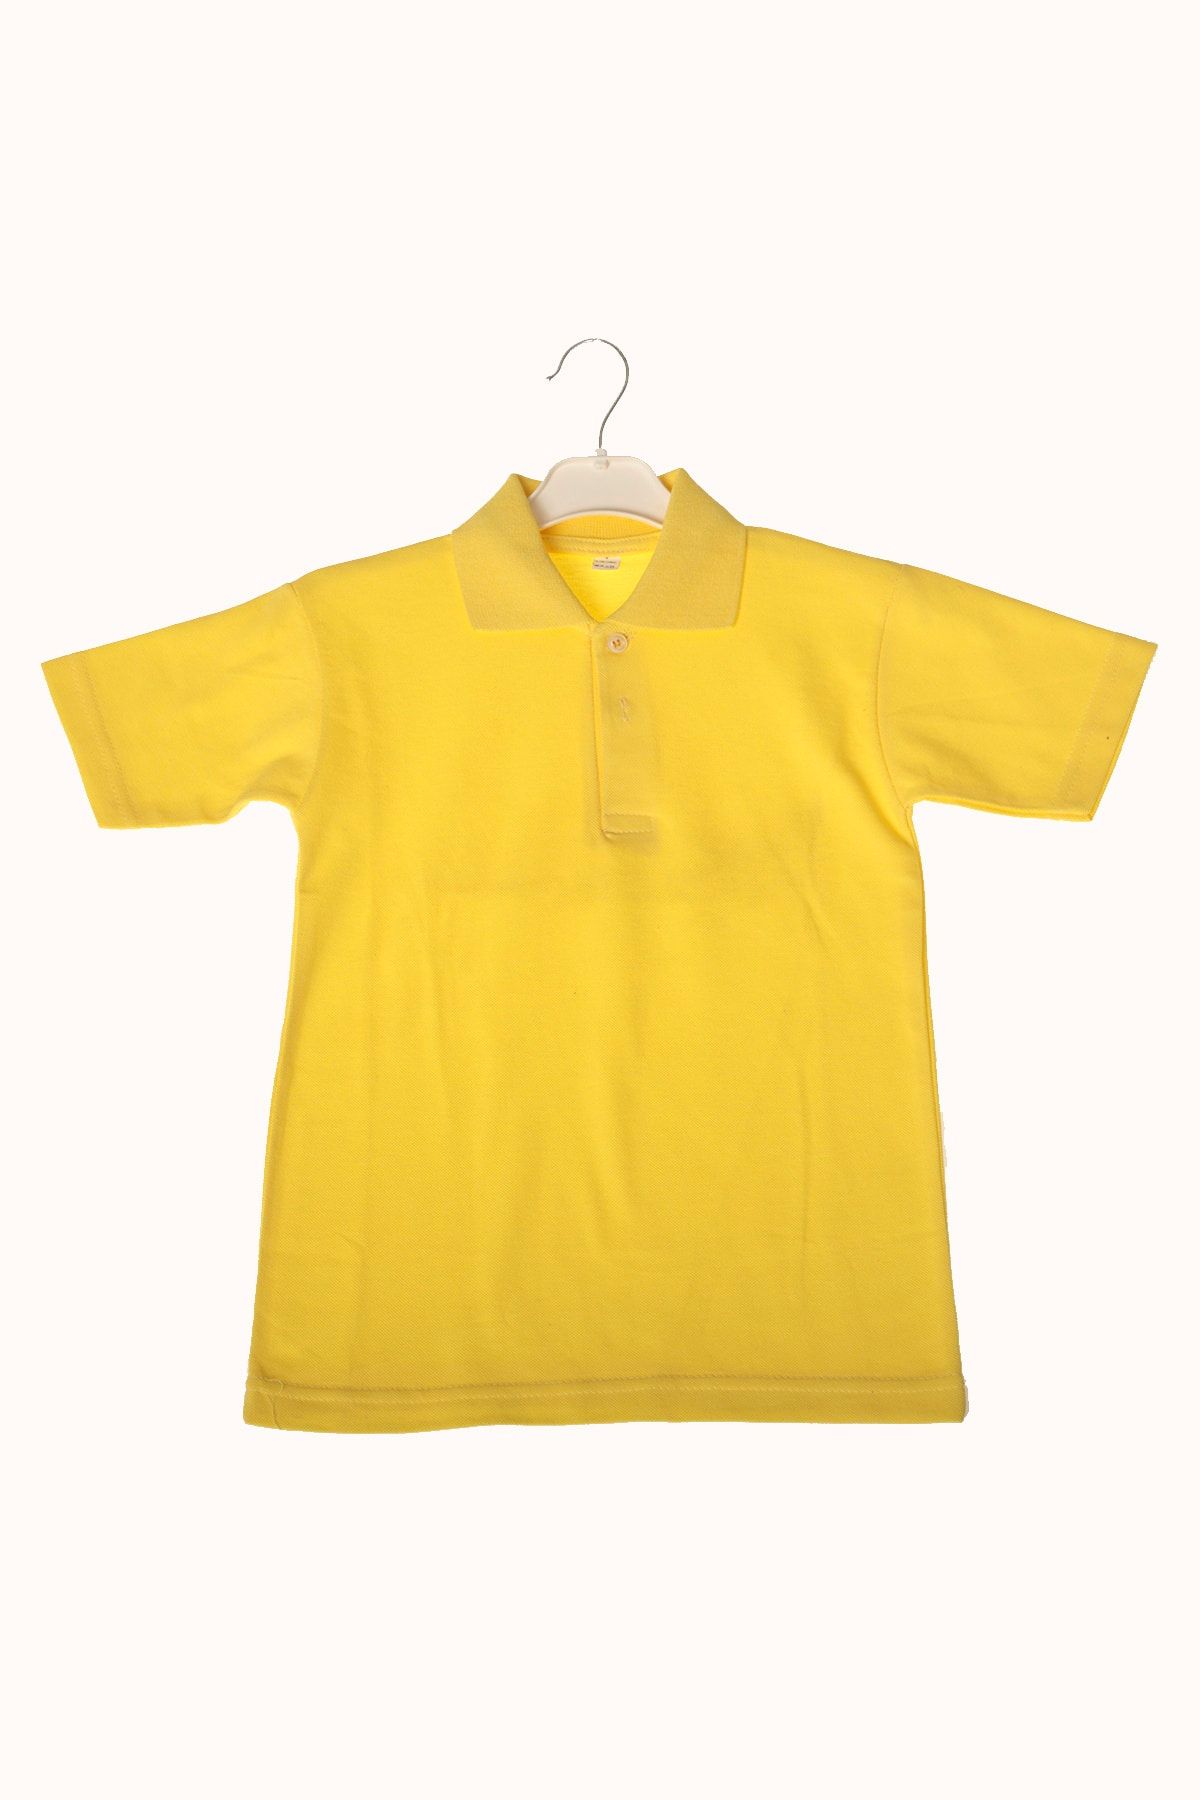 ÇÖLBAY Unisex Çocuk Sarı Polo Yaka T-shirt